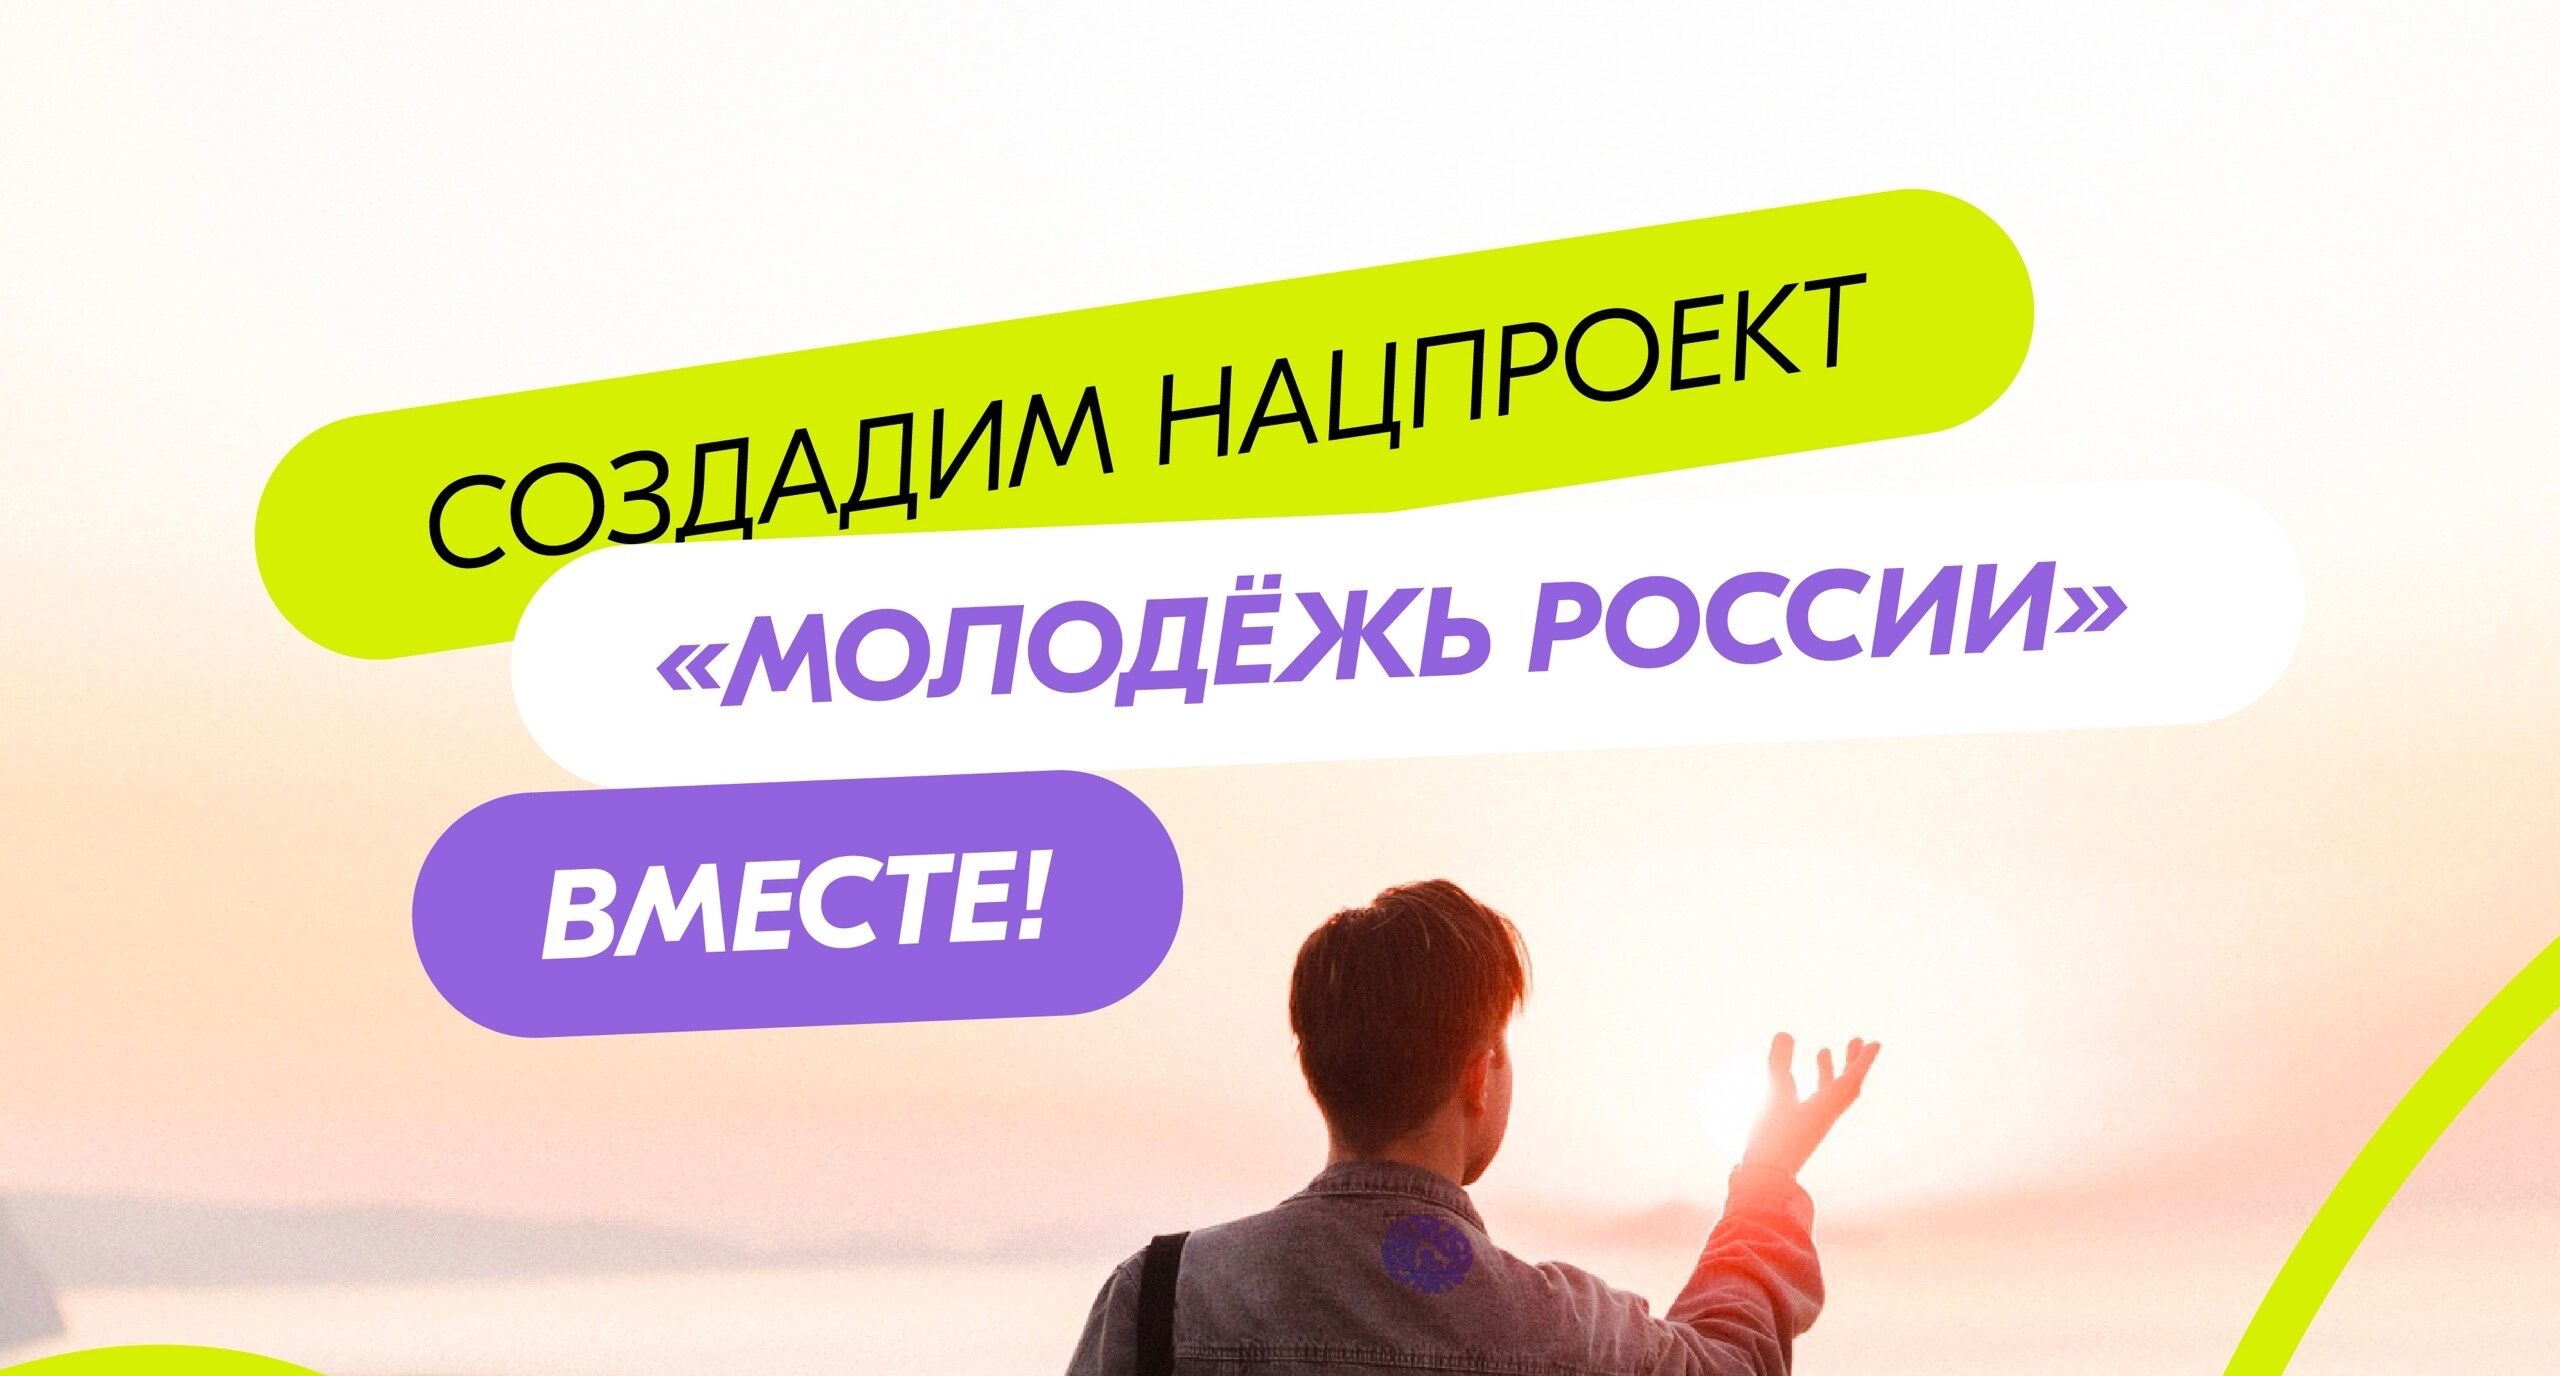 Создадим нацпроект «Молодежь России» вместе!